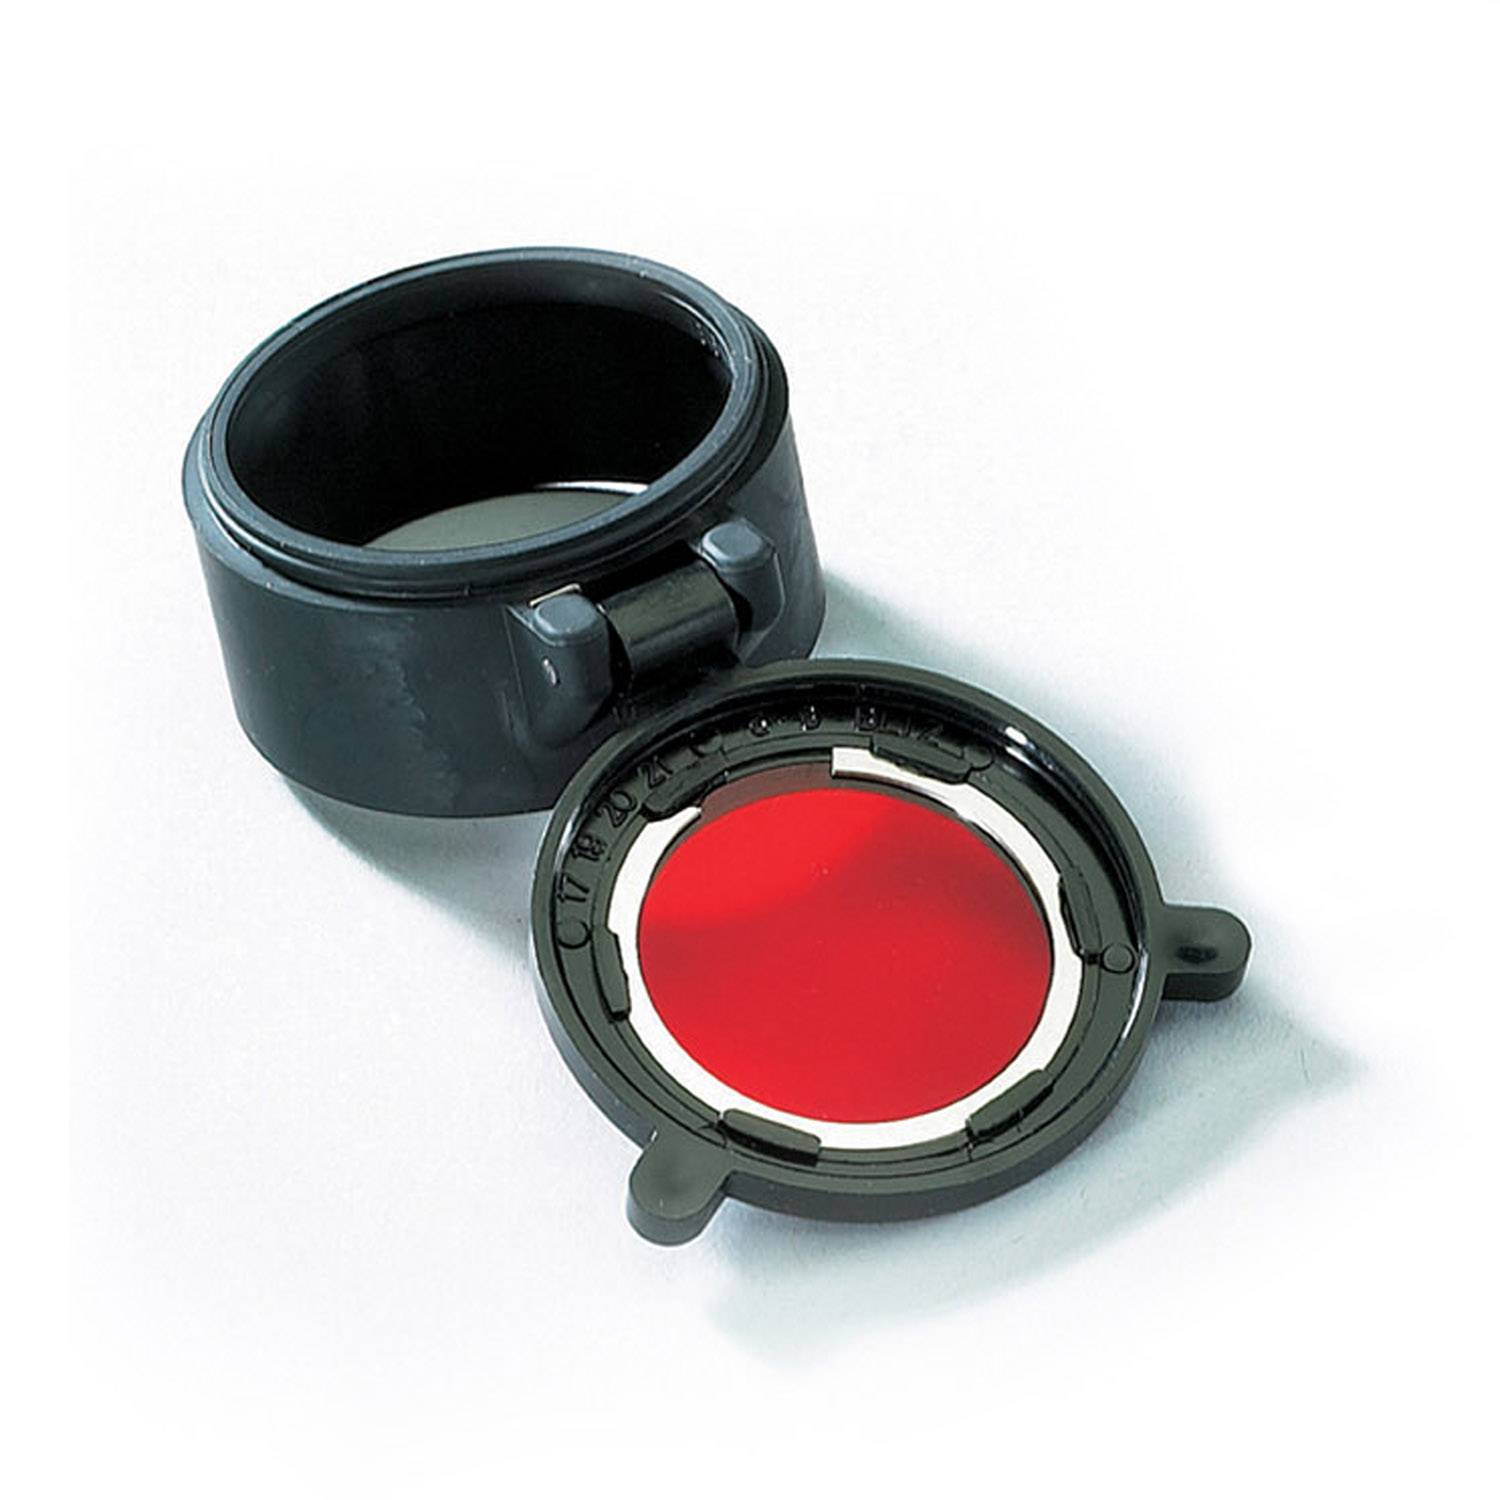 Streamlight Red Lens for Stinger Flashlight